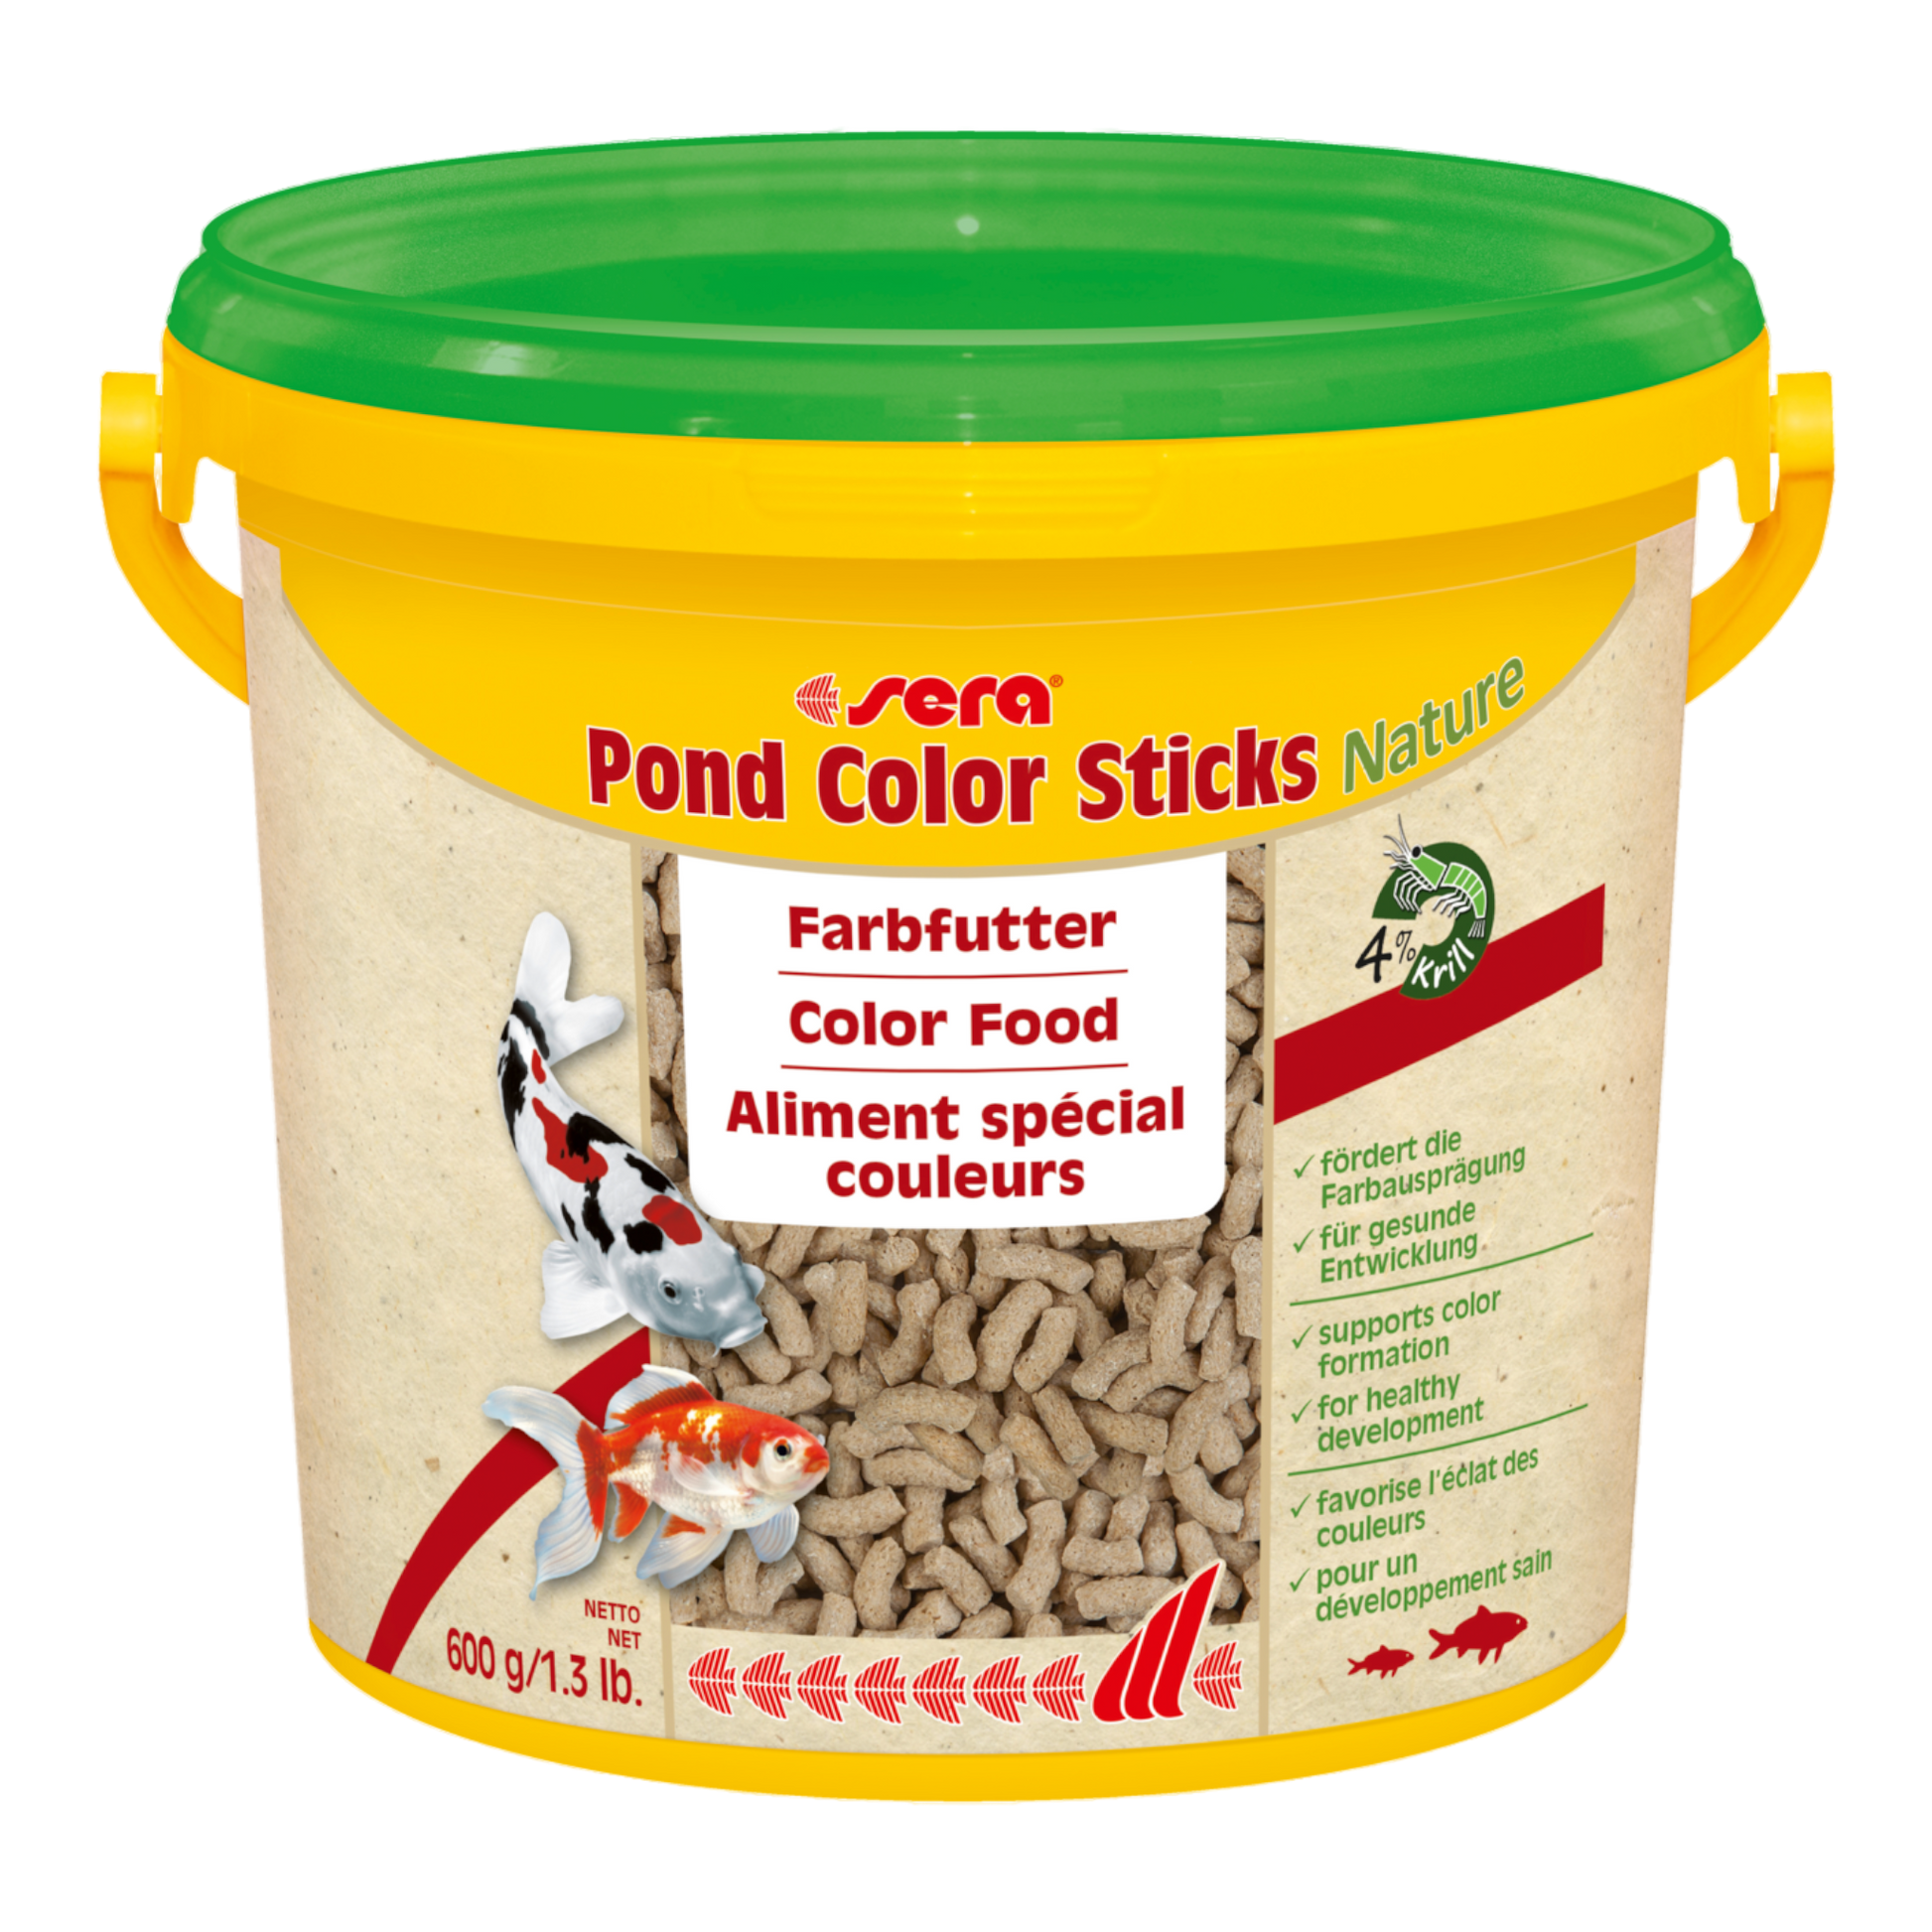 sera Pond Color Sticks Nature ist das Farbfutter aus schonend hergestelltem Granulat ohne Farb- und Konservierungsstoffe für Teichfische.